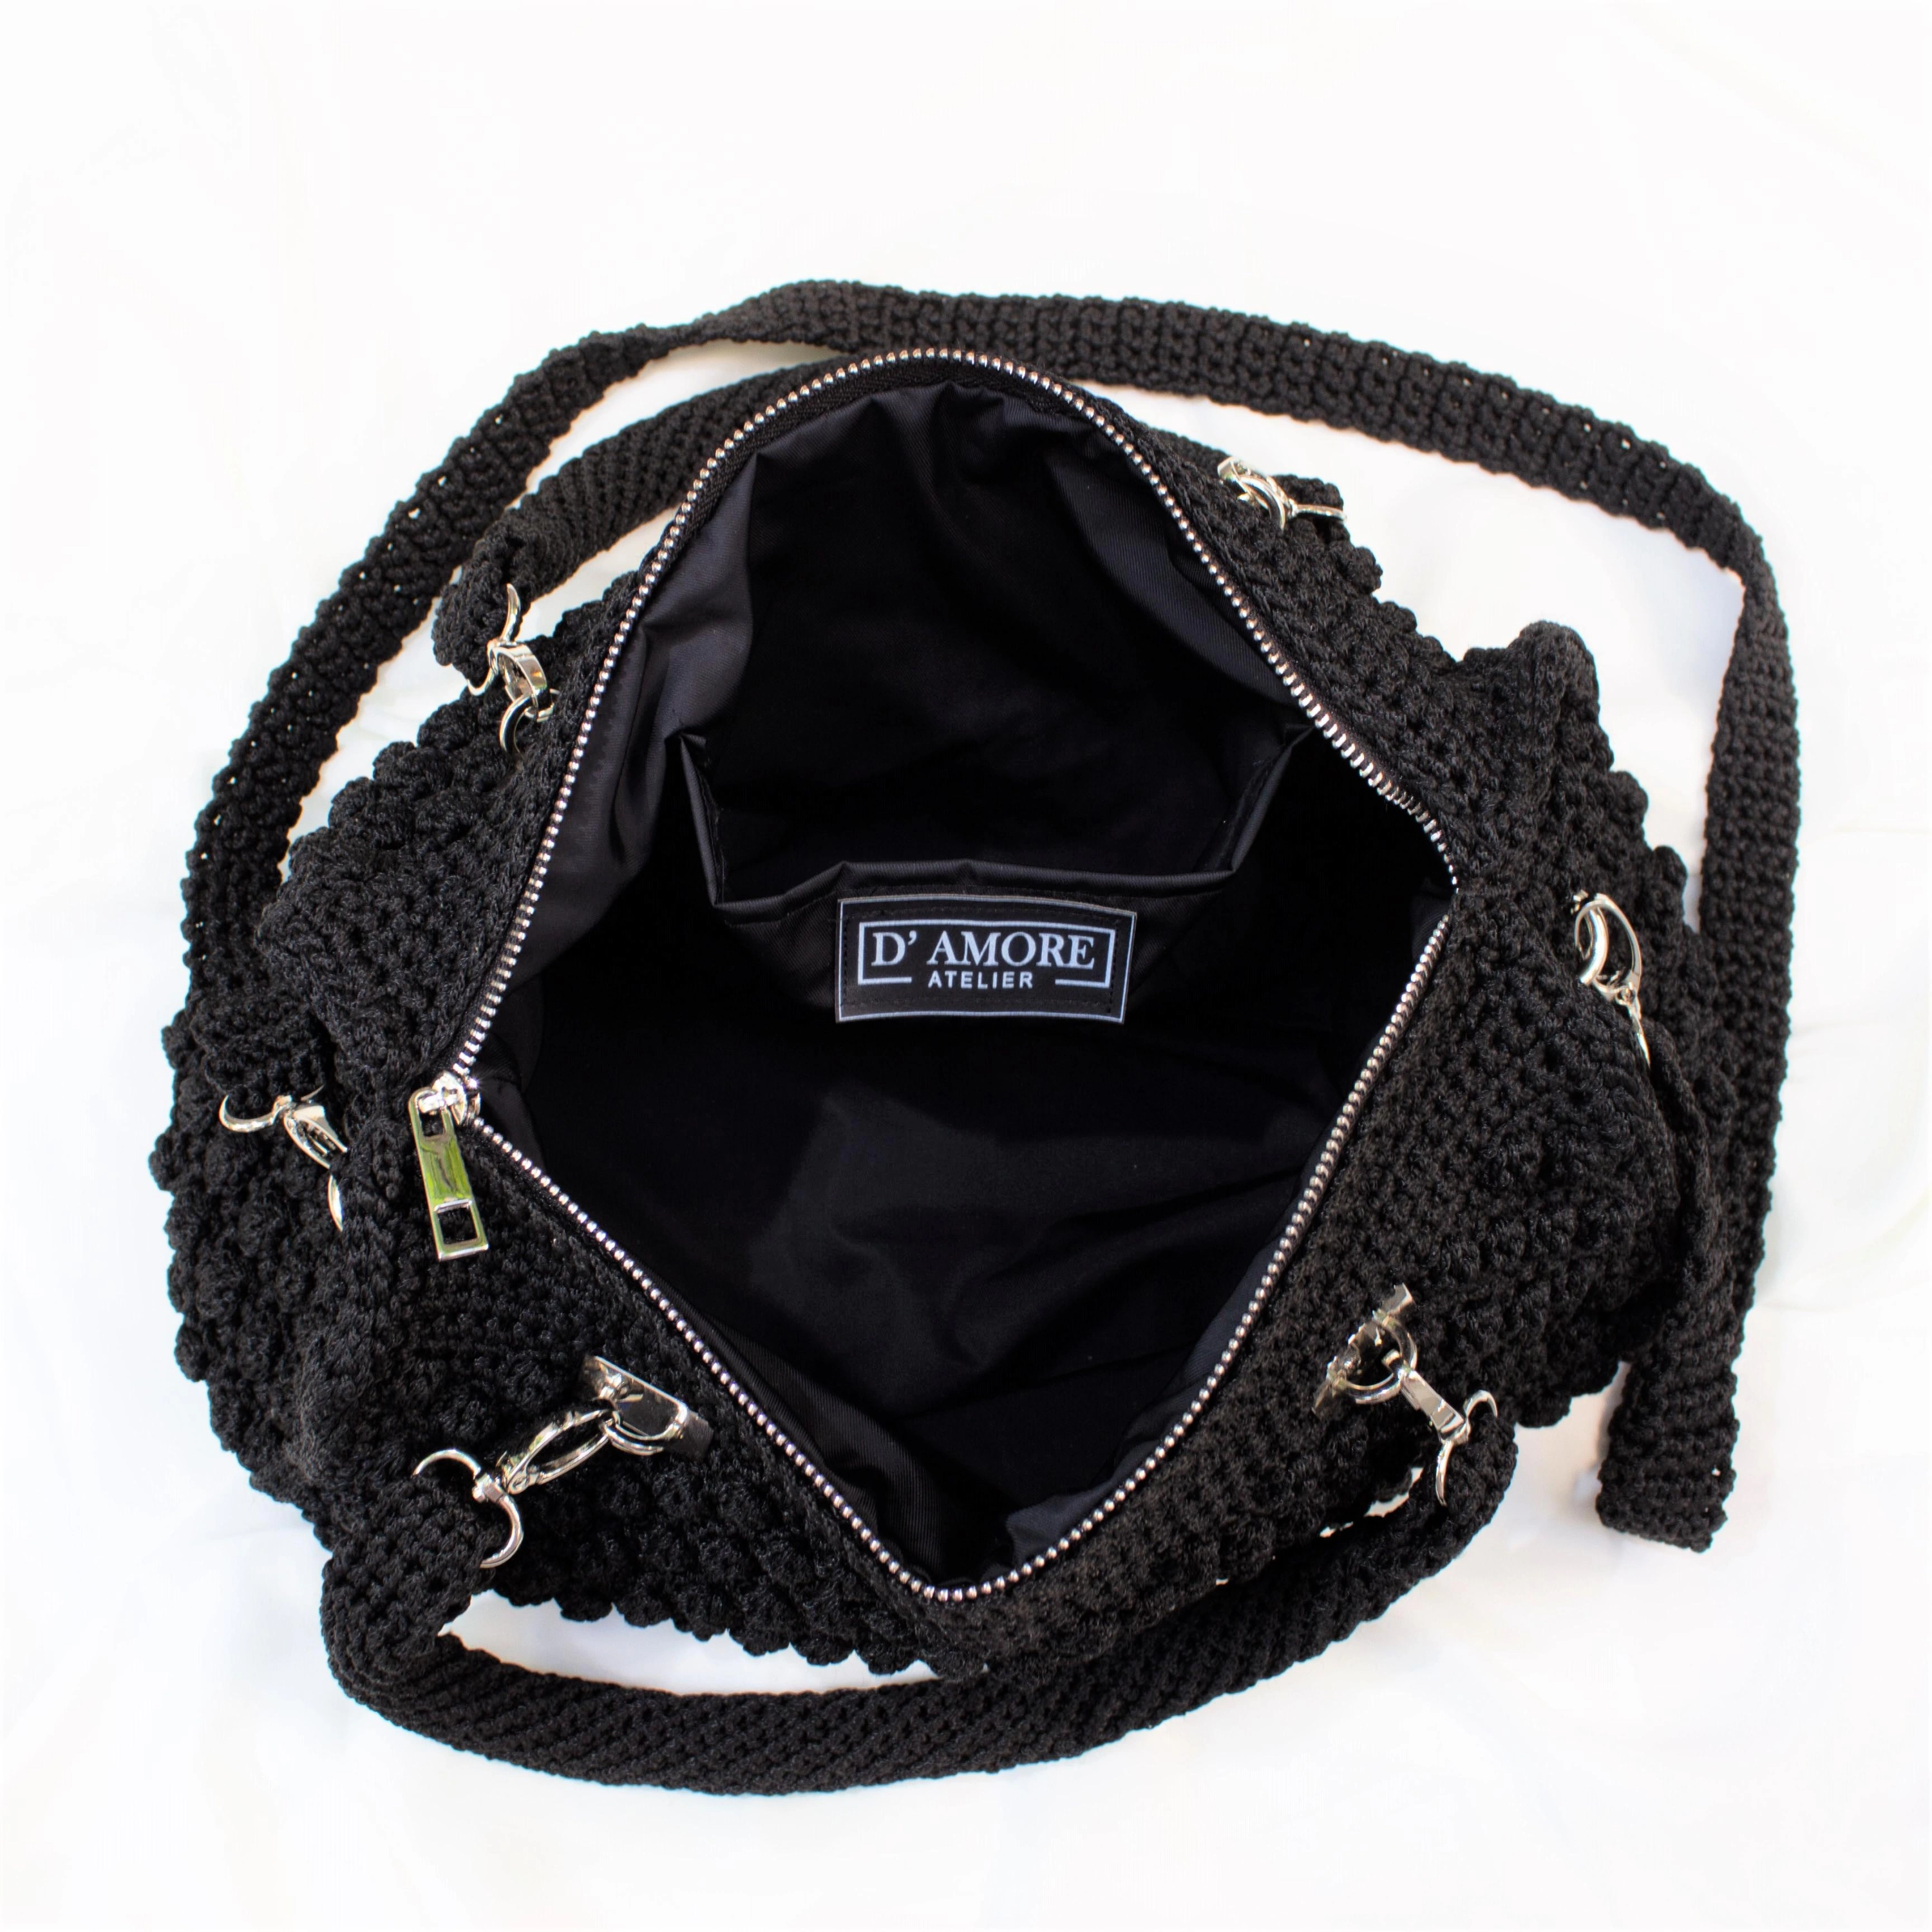 Damore Atelier Siyah Bavul Örme El Çantası